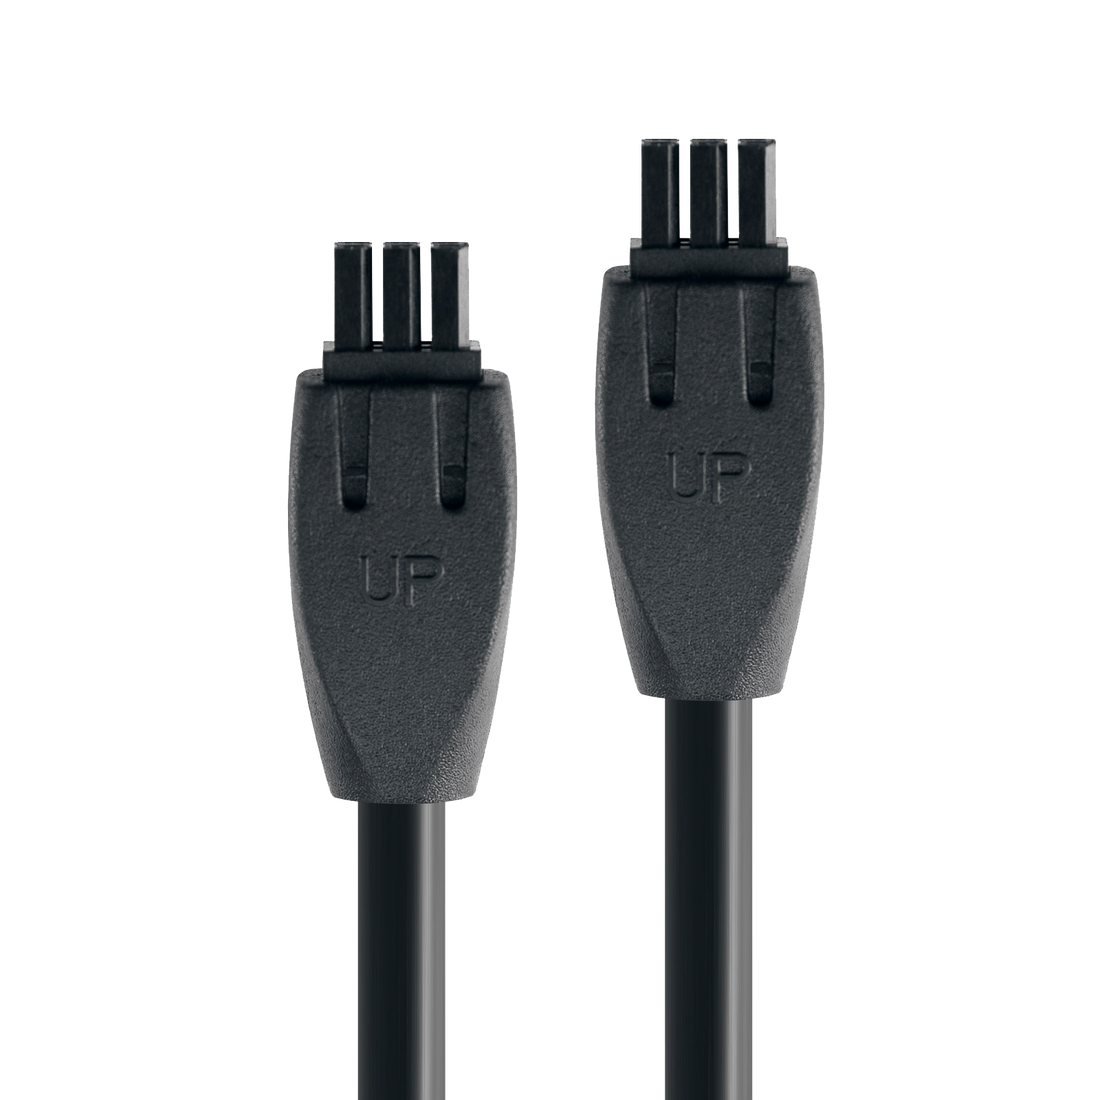 Cable E10/E25 Compatible con las series de altavoces Exclaim y Luna.